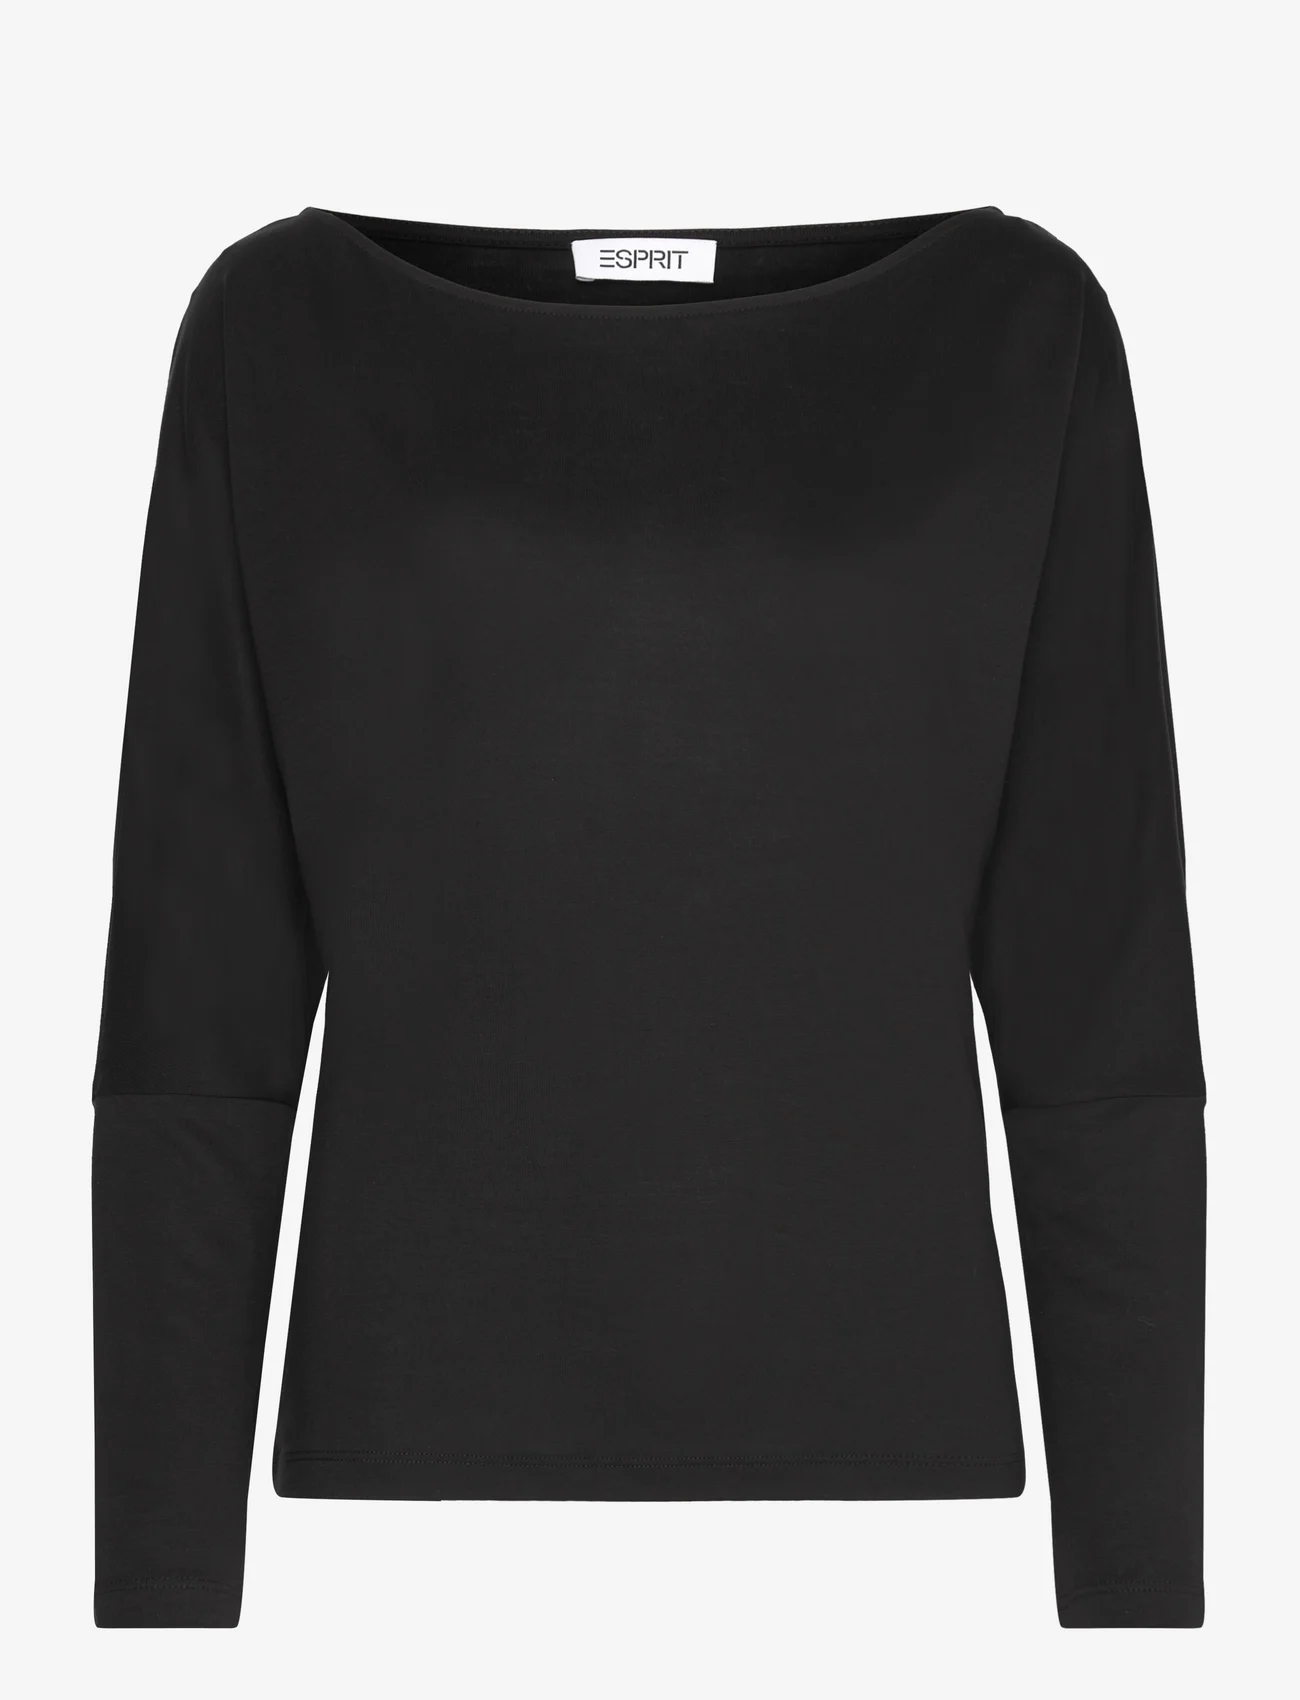 Esprit Casual - T-Shirts - t-shirts & tops - black - 0